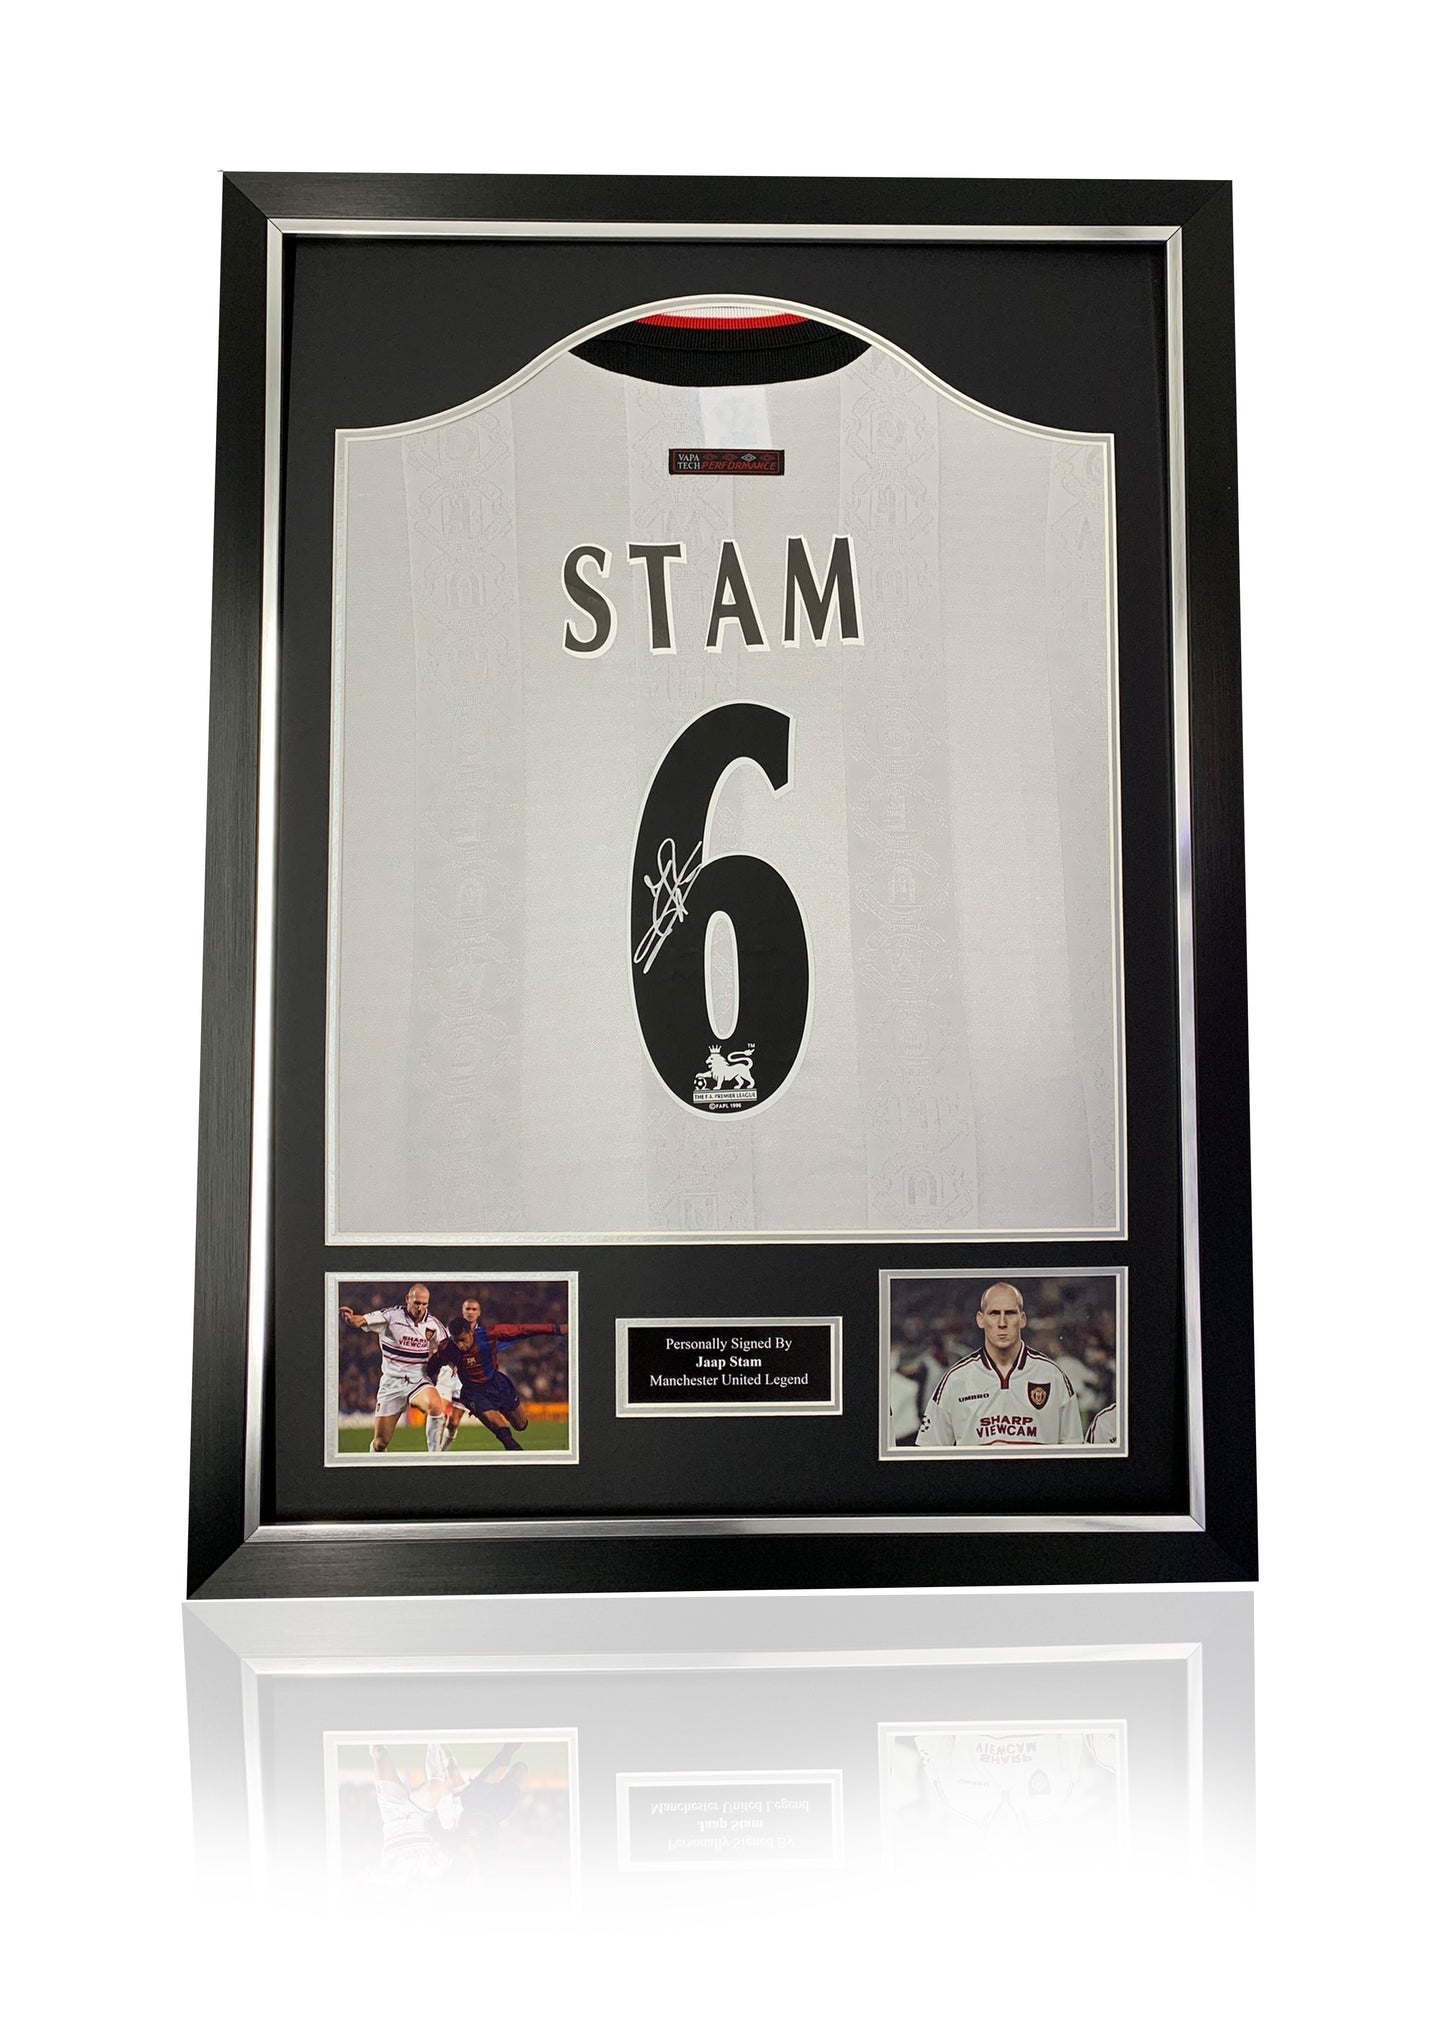 Jaap Stam signed framed 1999 treble winning Manchester United shirt